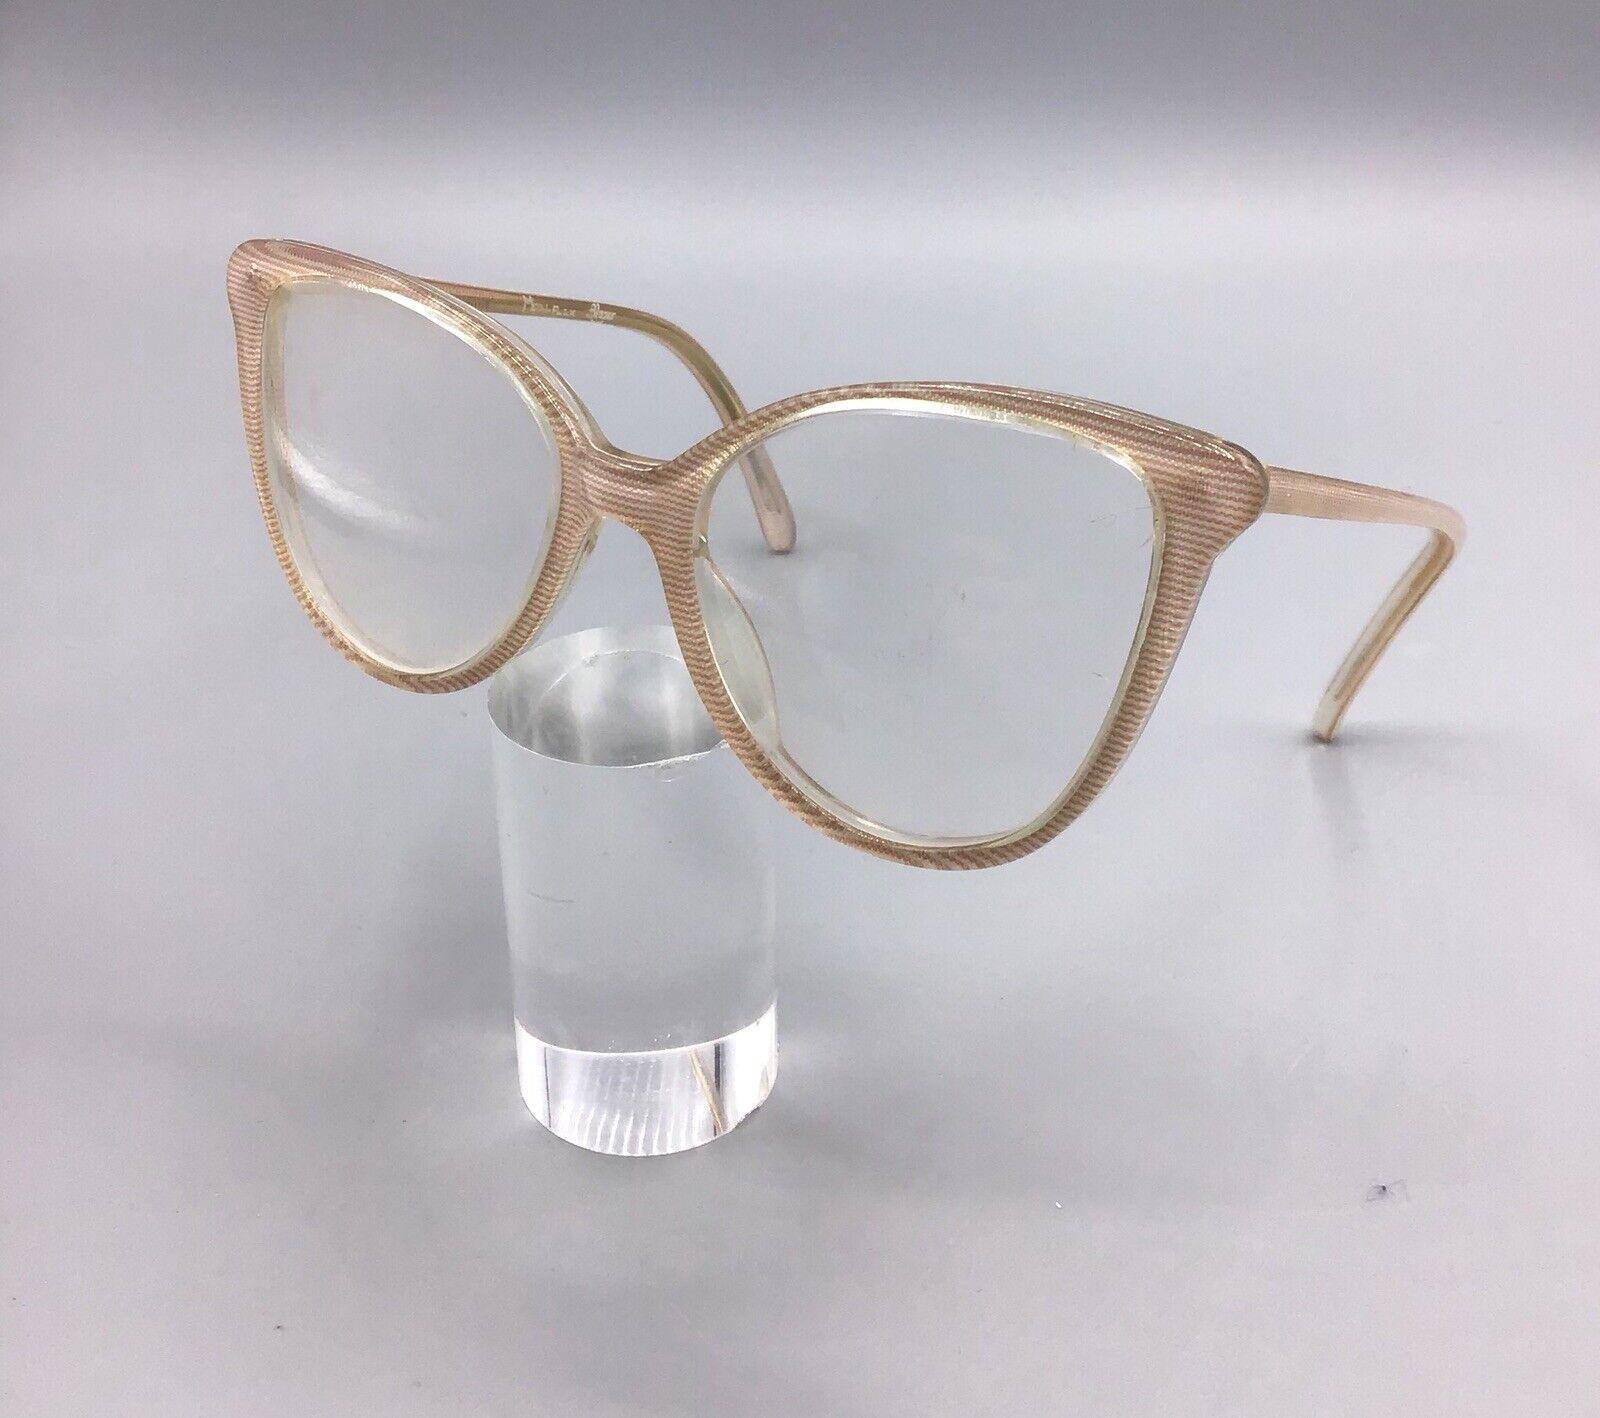 Metalflex Alazer cal. 48 occhiale vintage eyewear frame brillen lunettes